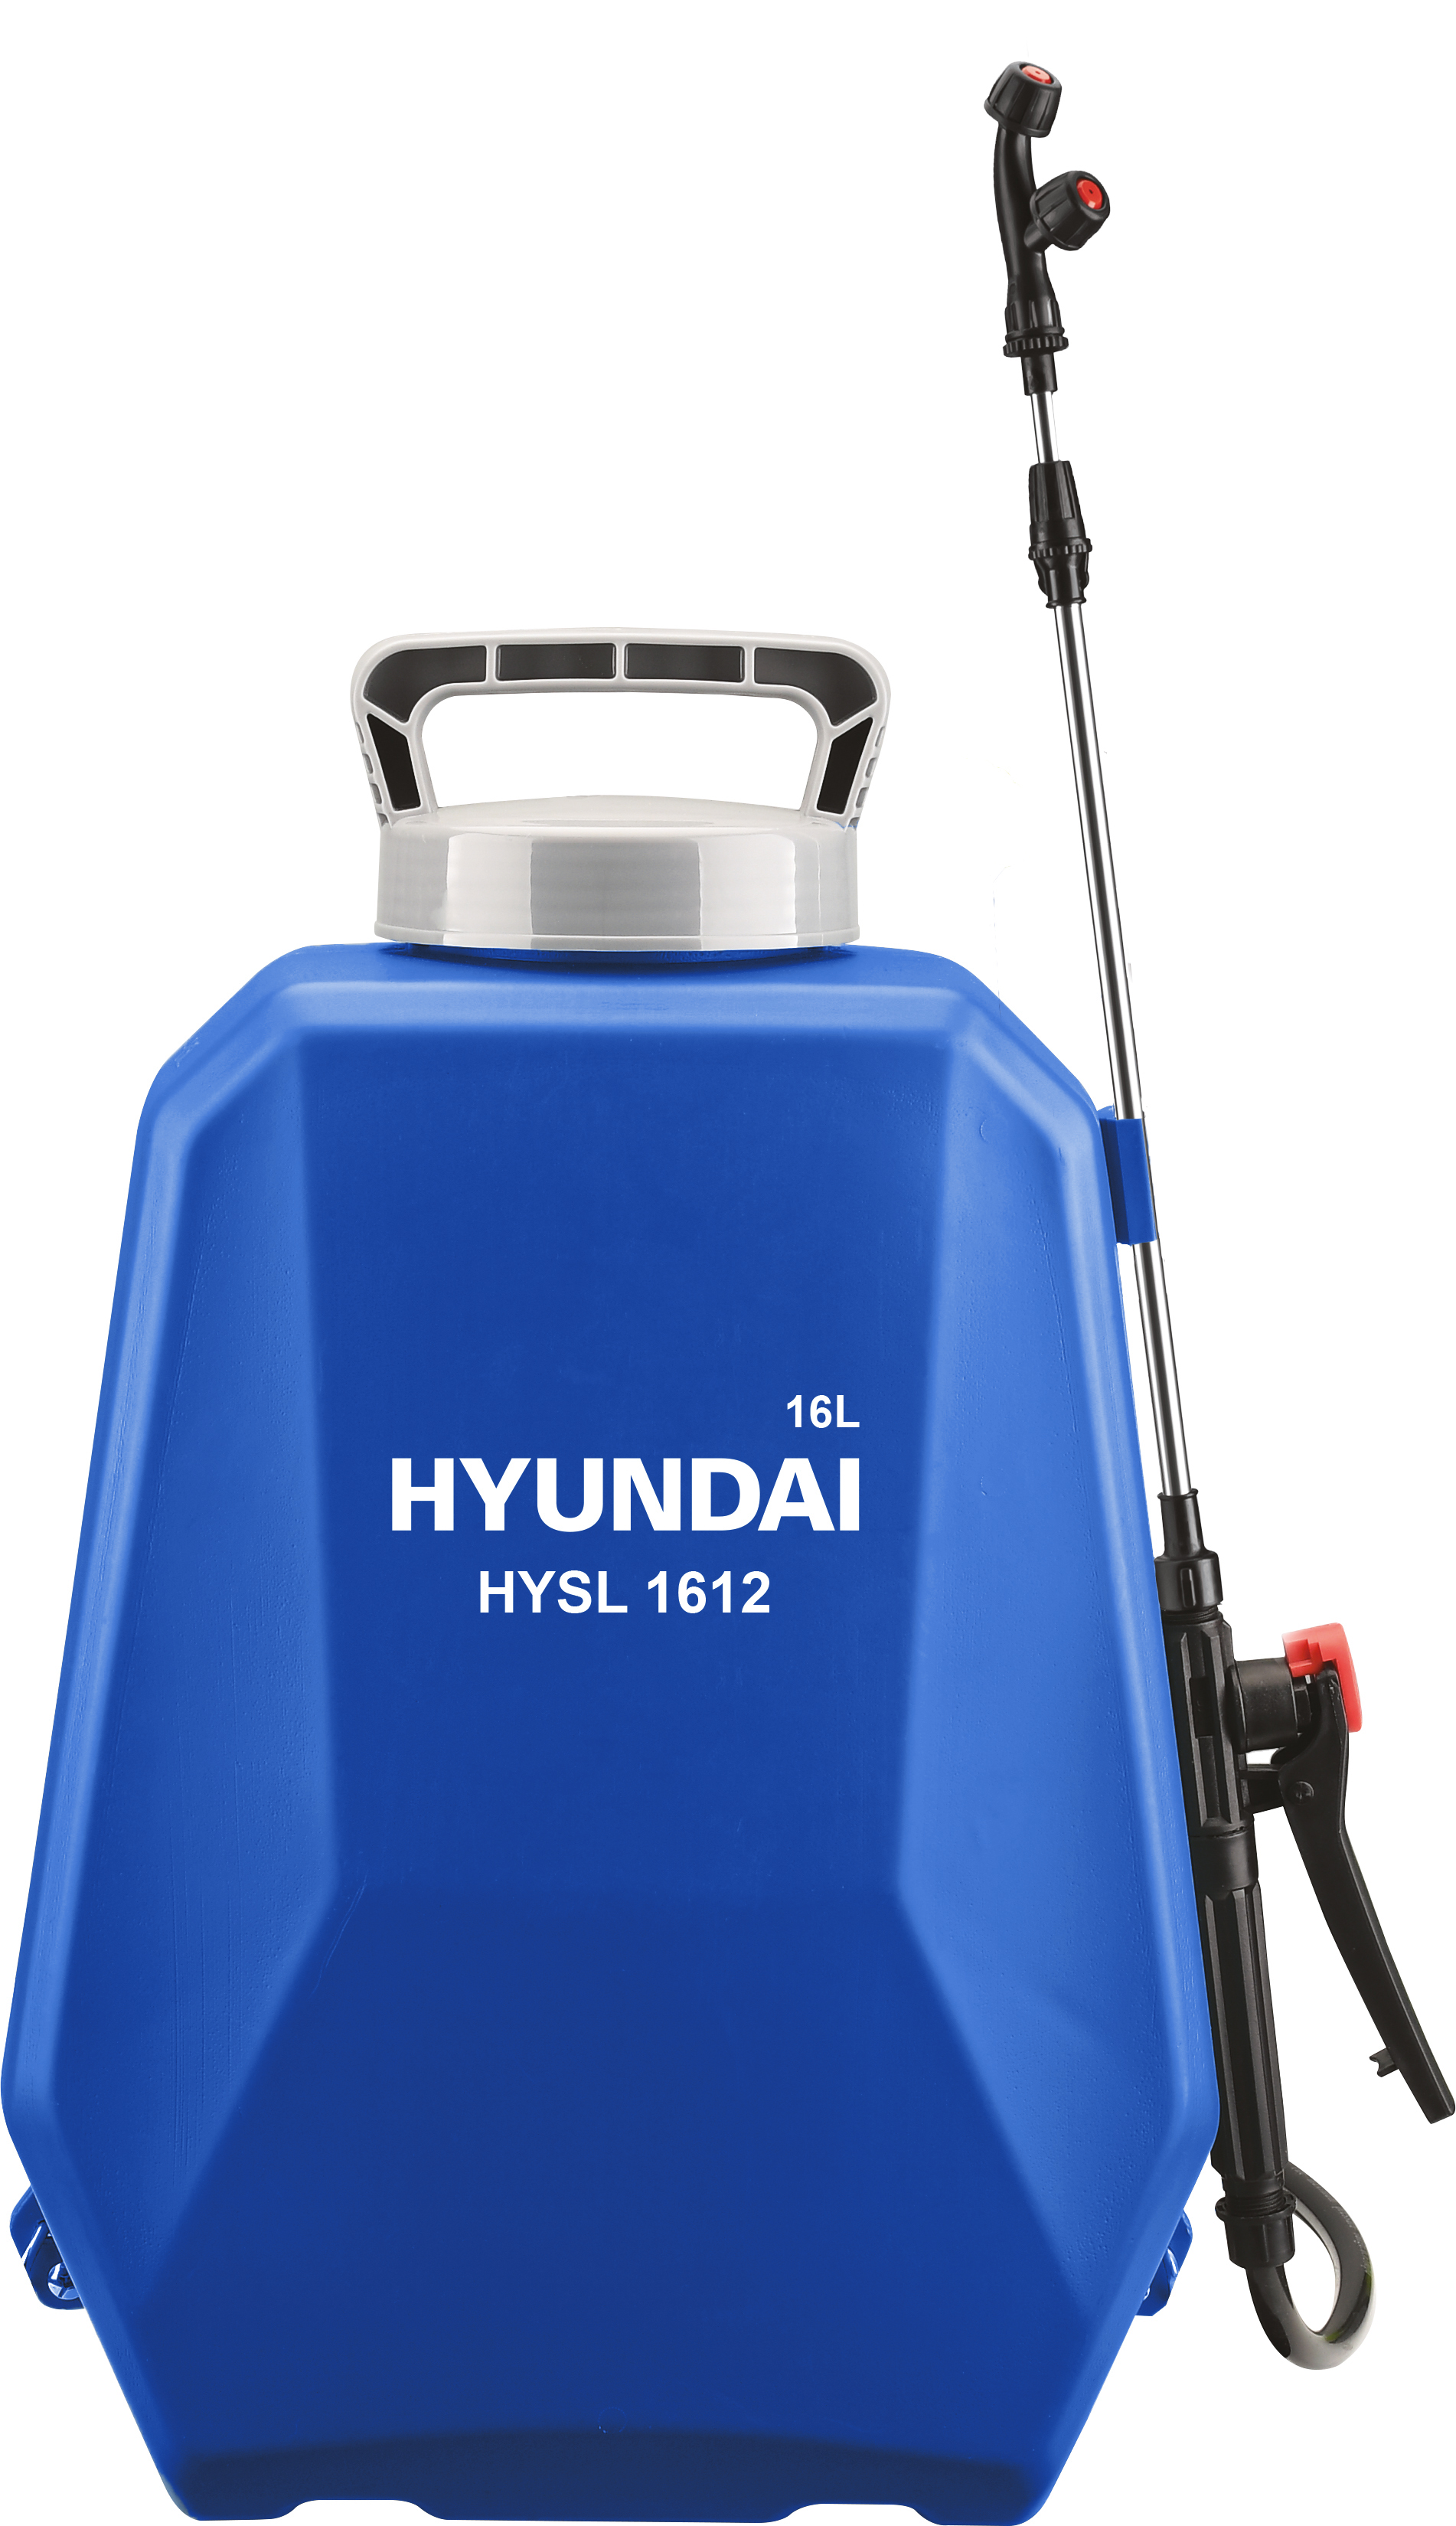 Аккумуляторный опрыскиватель Hyundai HYSL 1612 аккумуляторный опрыскиватель ryobi